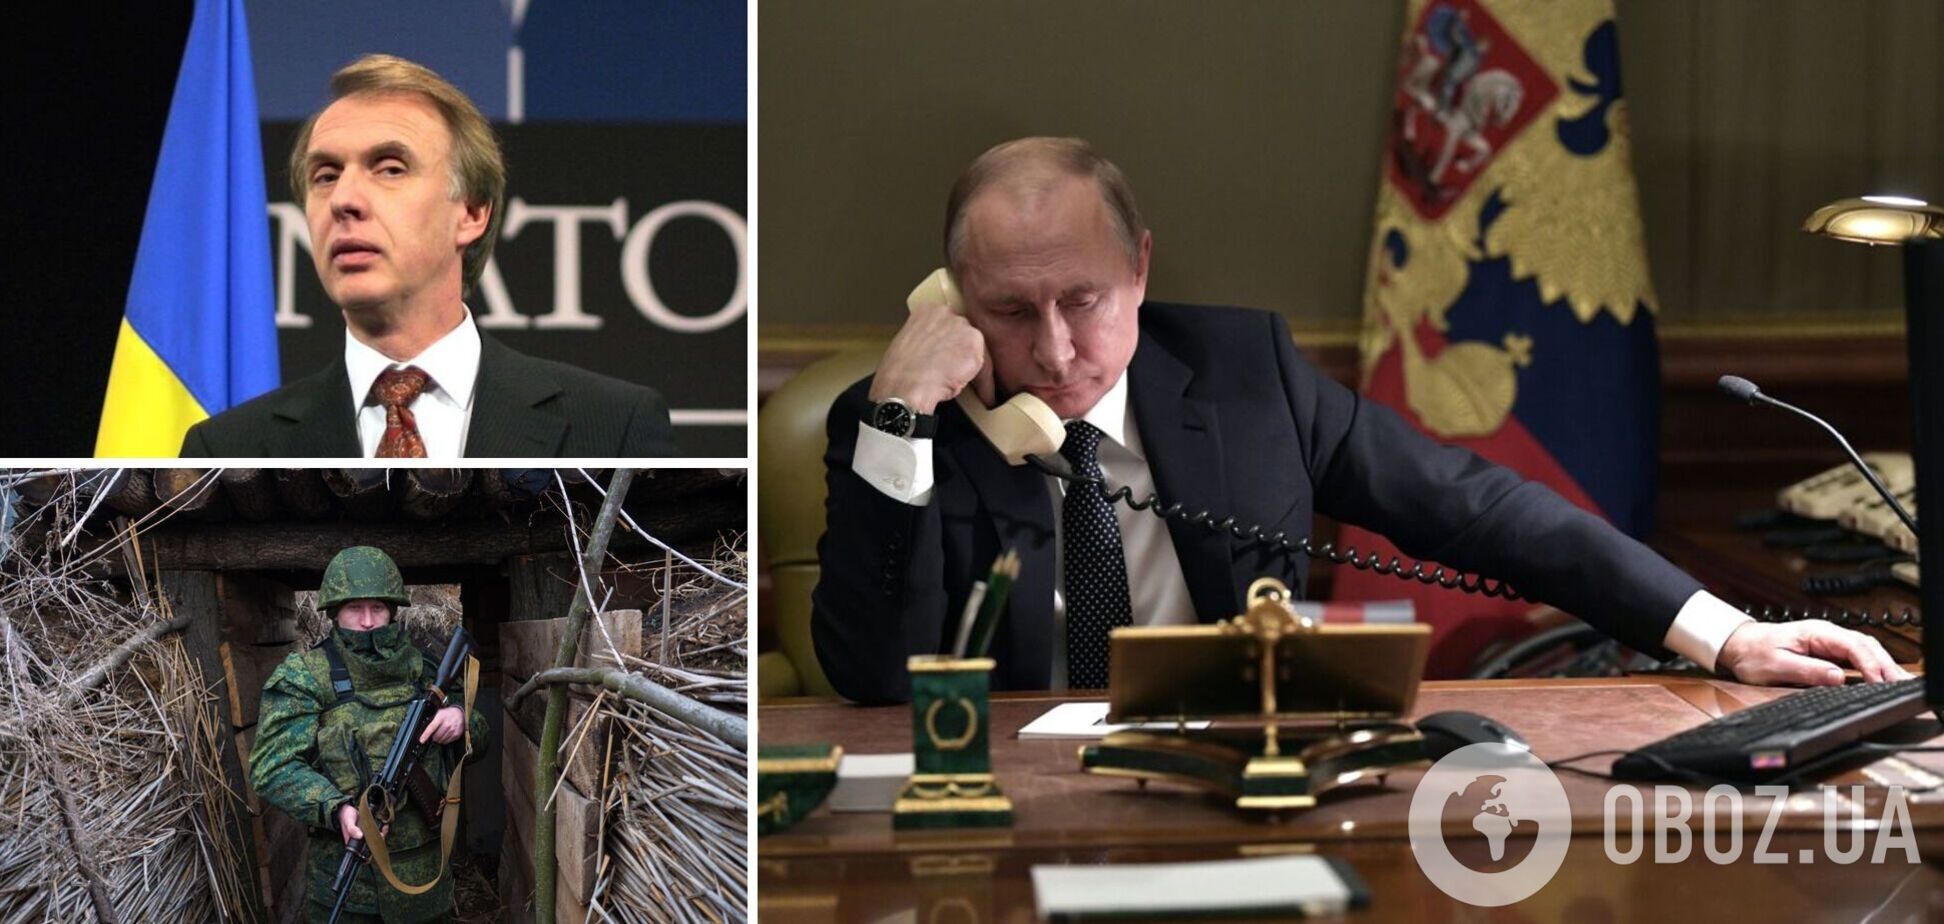 Огрызко: Путин прекратит кровавую войну, когда прекратится имитация борьбы за мир. Интервью